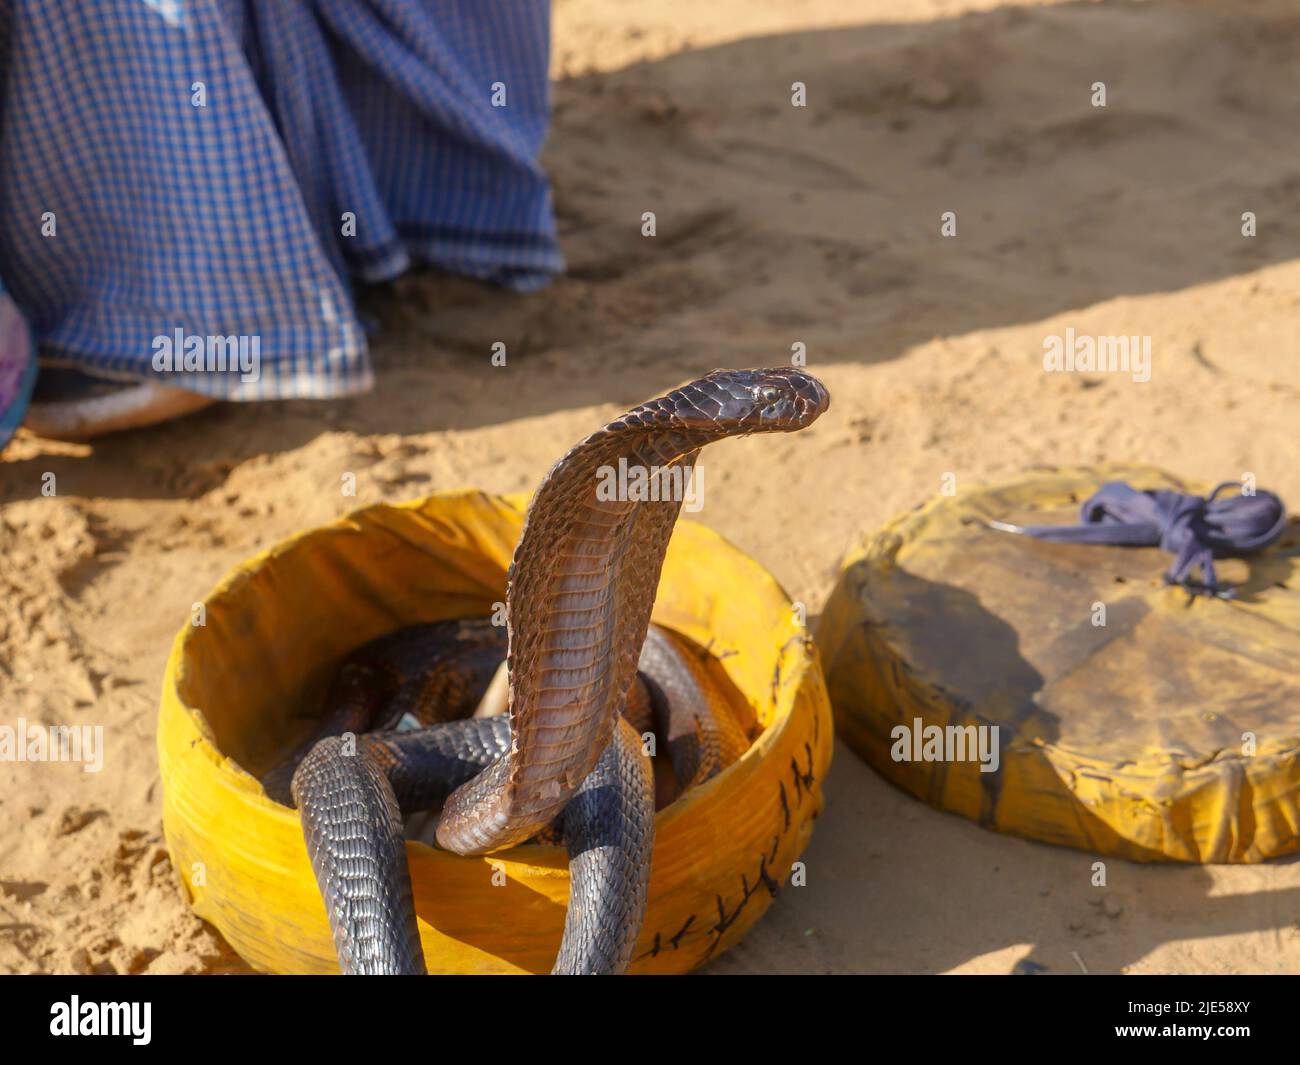 Cobra Snake mostrando capucha, primer plano, colocado en una cesta Foto de stock